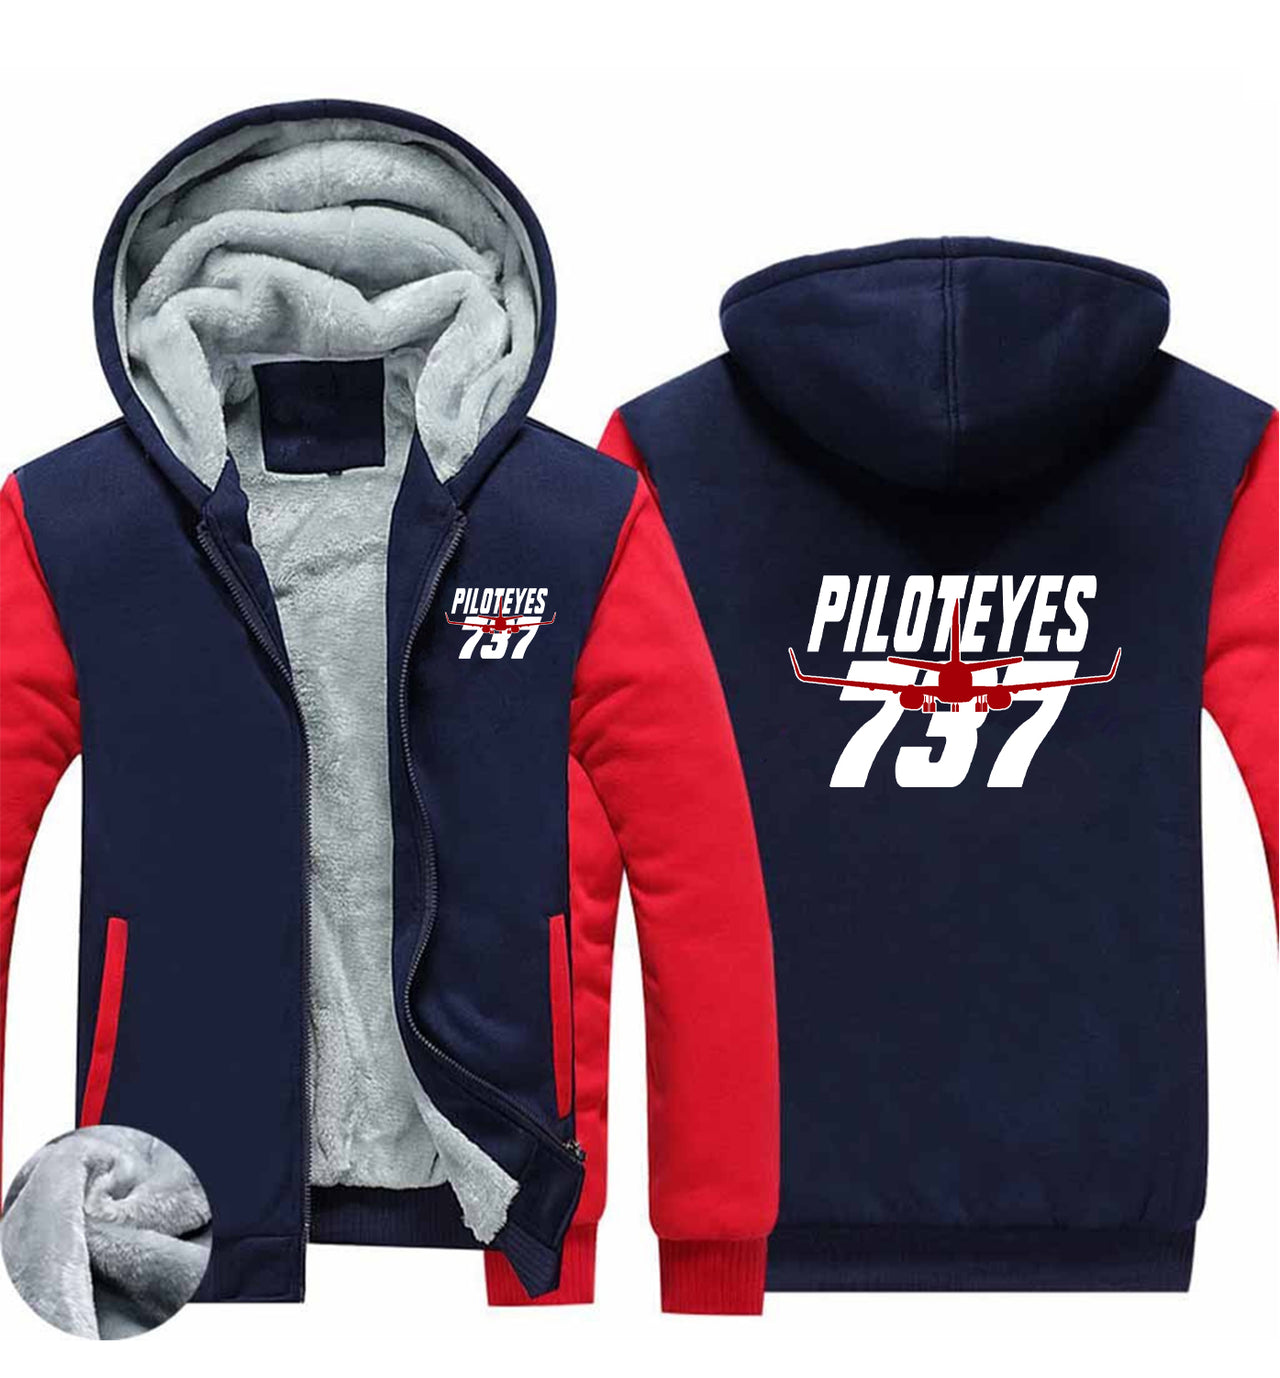 Amazing Piloteyes737 Designed Zipped Sweatshirts